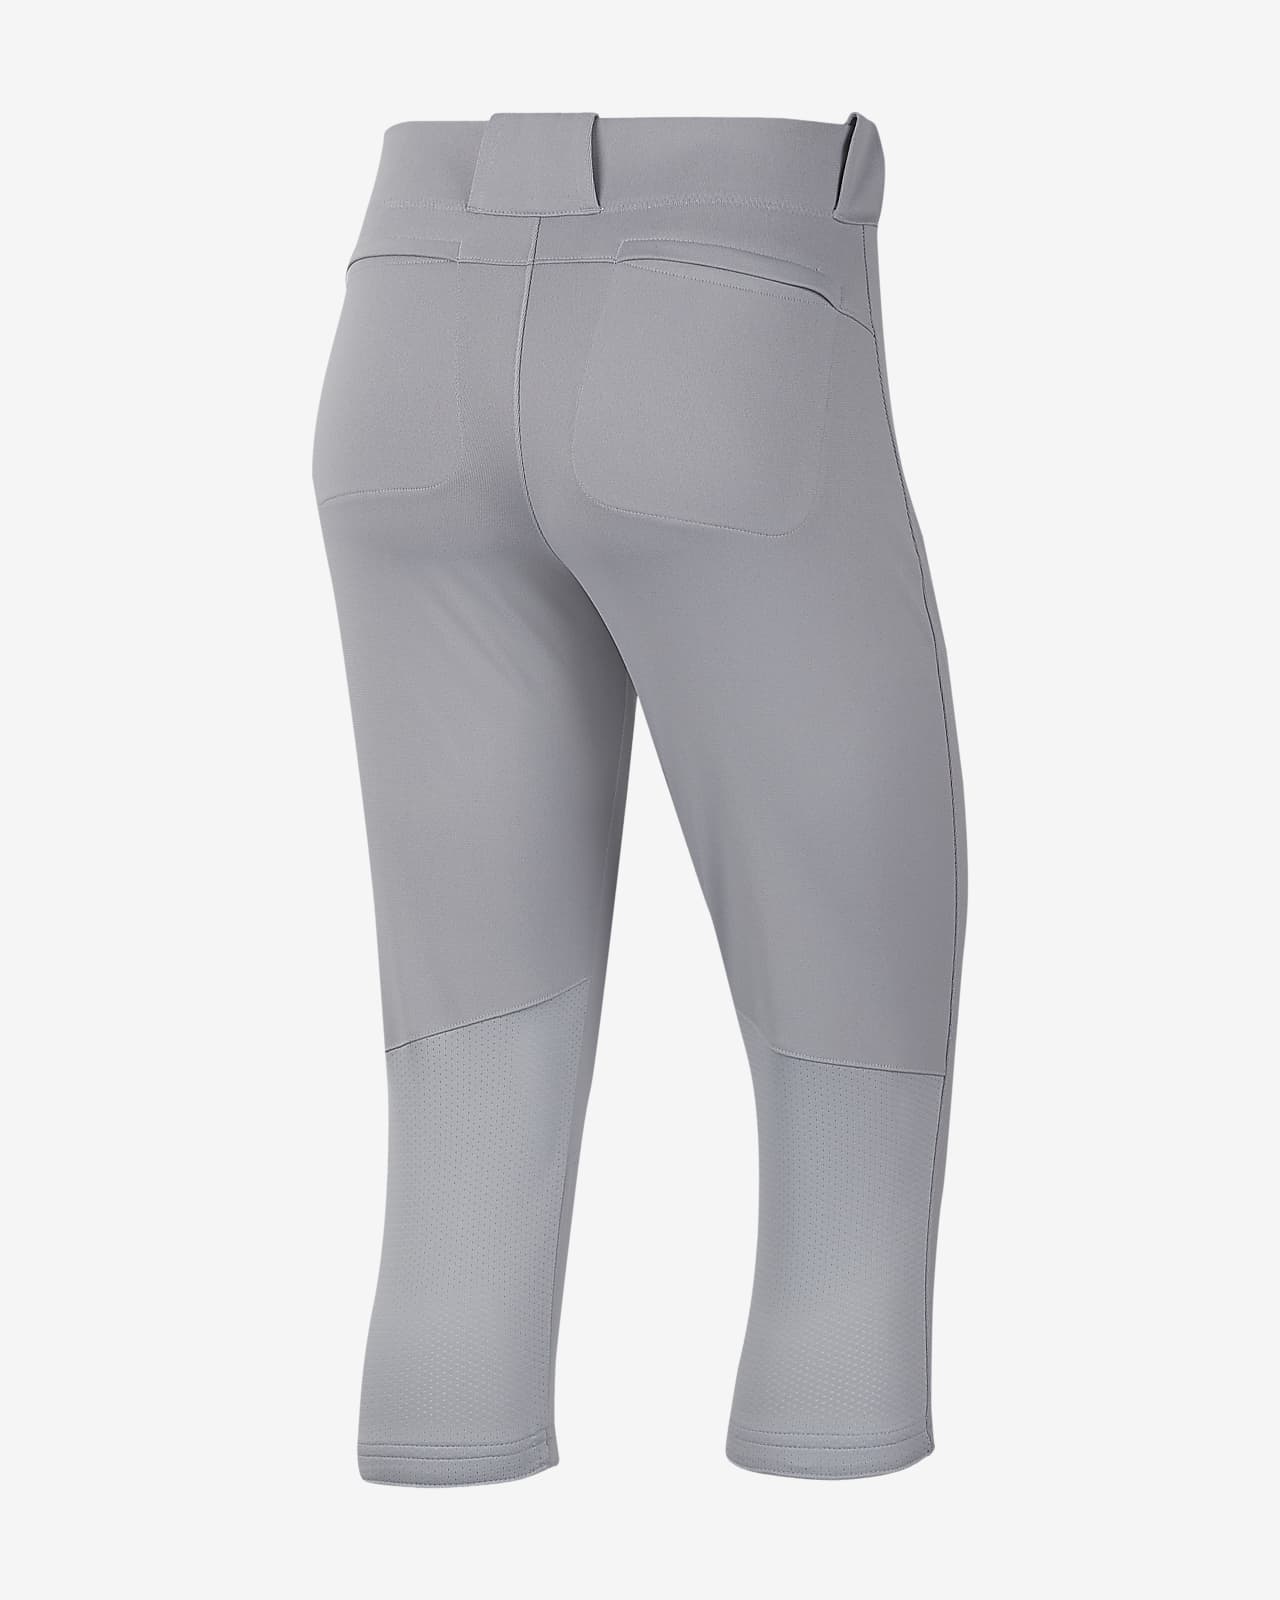 grey nike softball pants